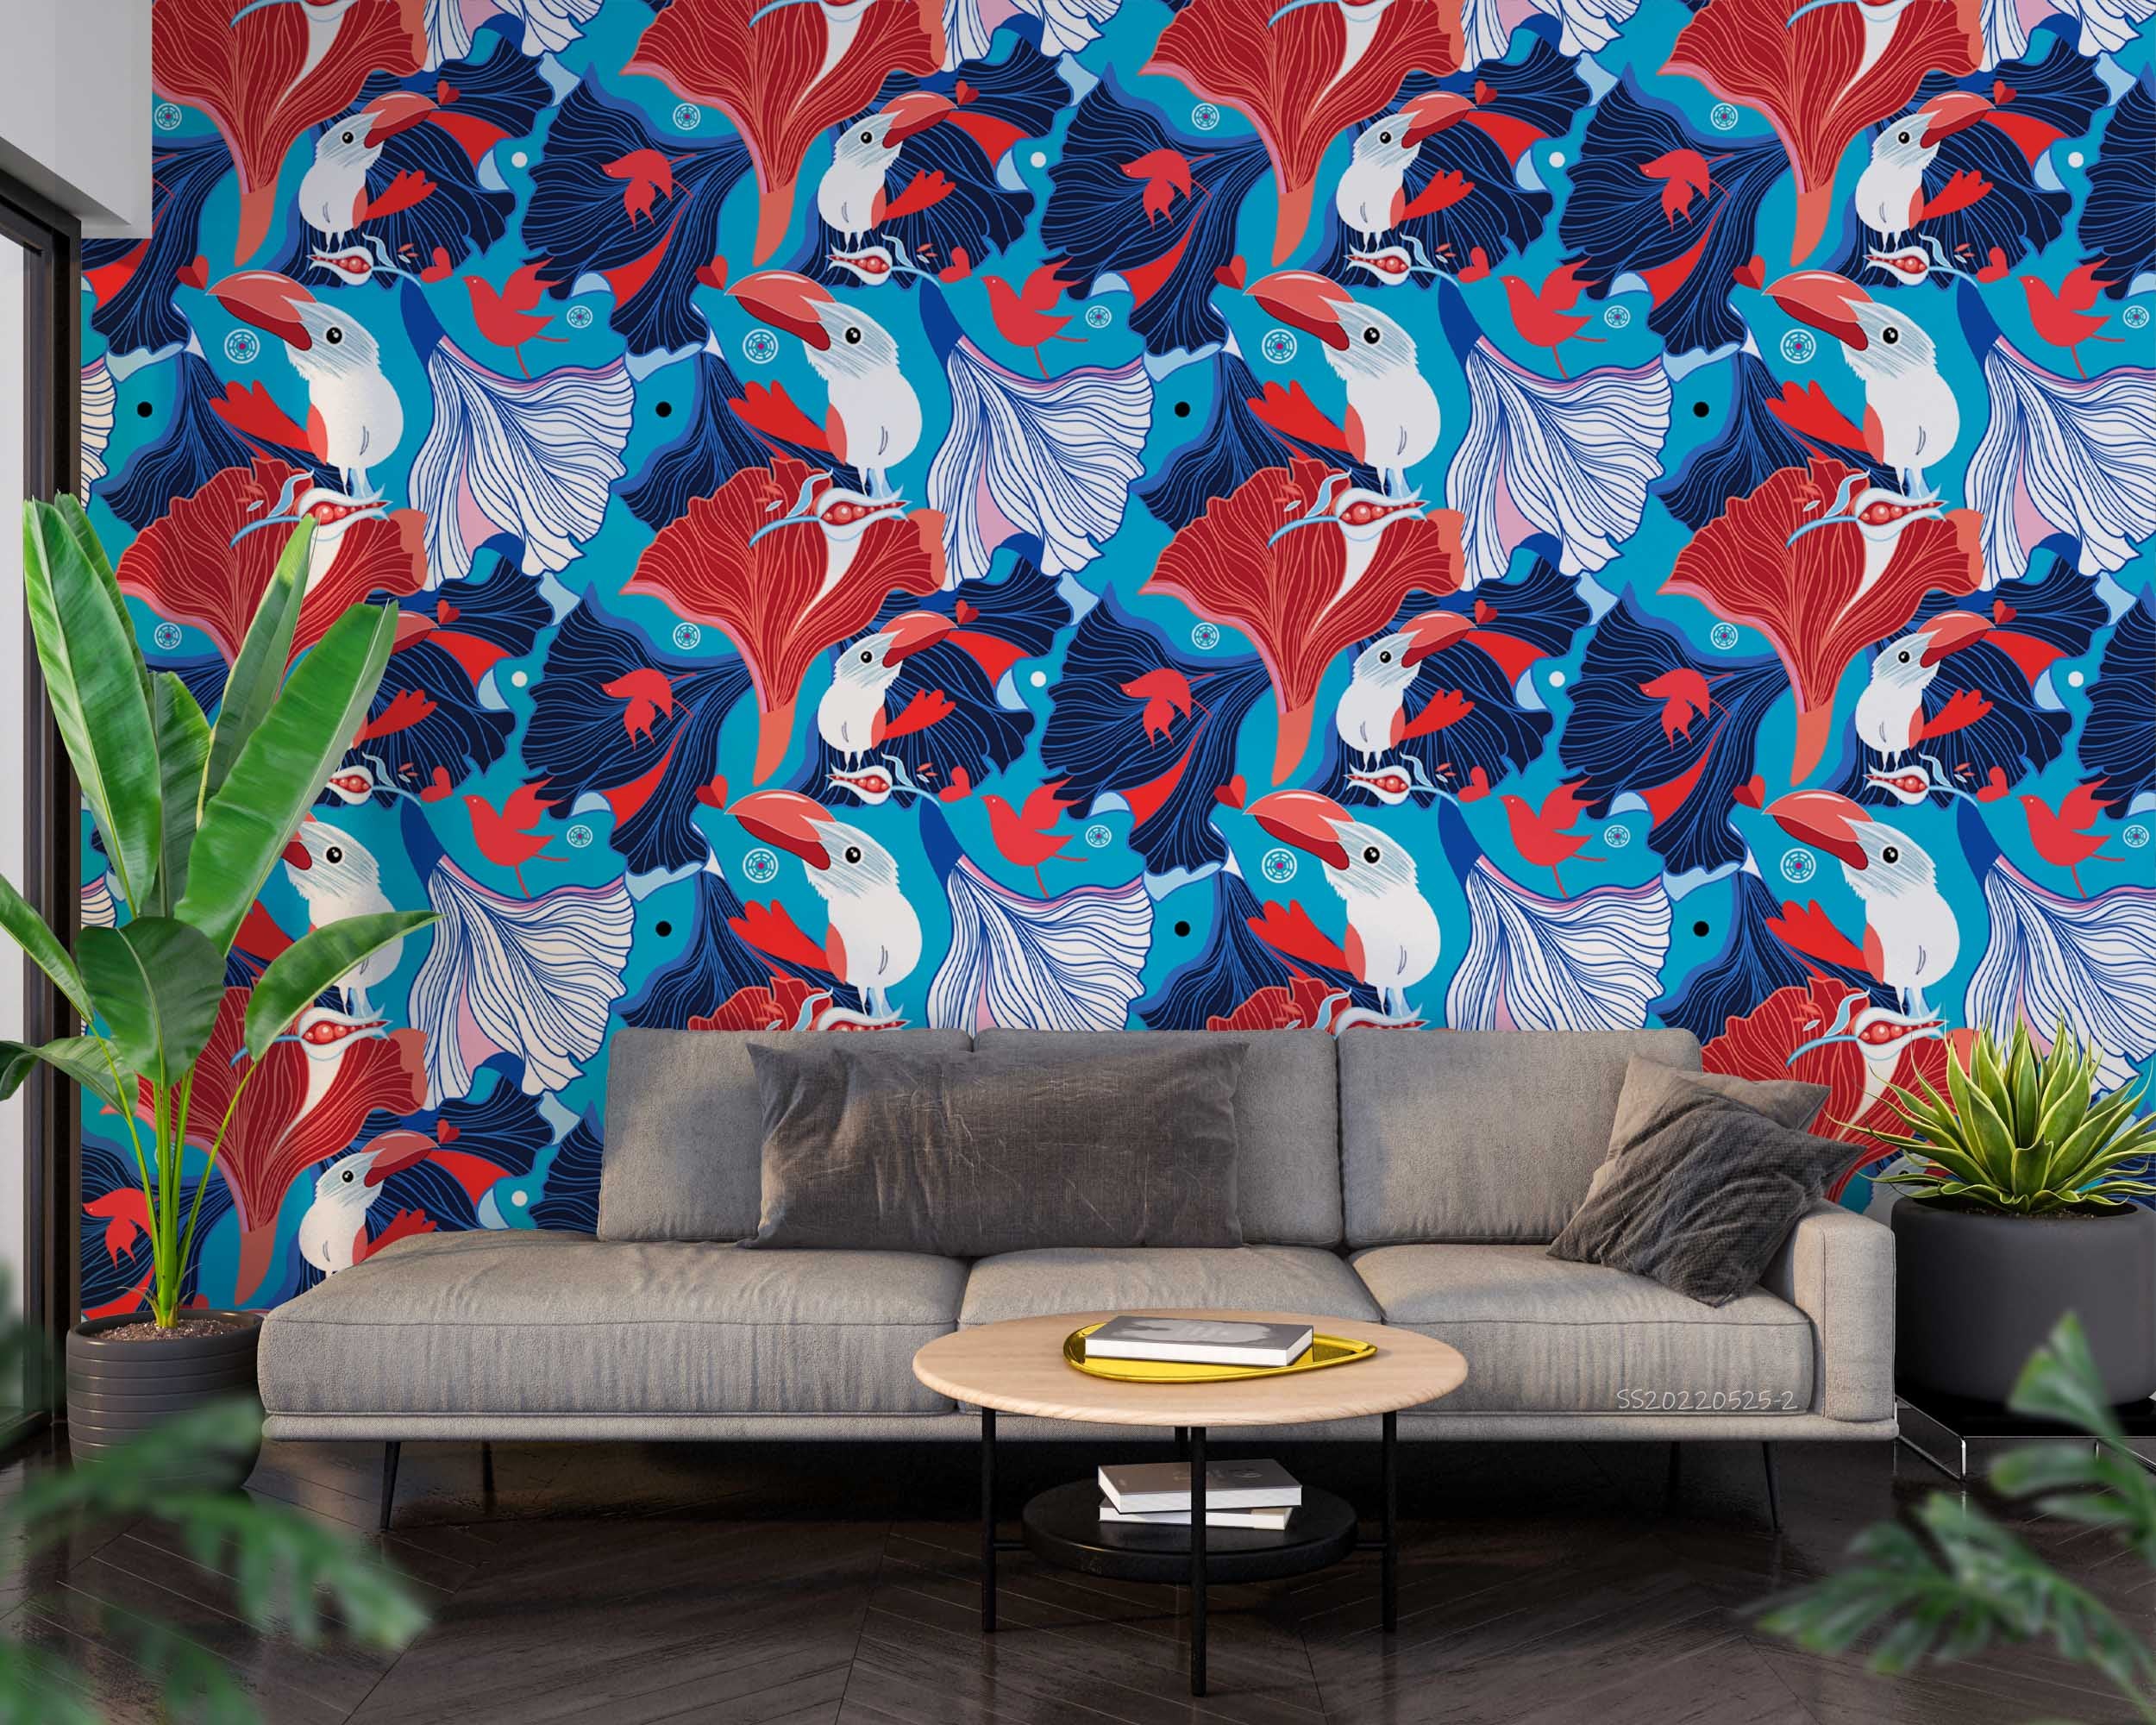 3D  Abstract Bird Pattern Blue Background Wall Mural Wallpaper GD 127- Jess Art Decoration